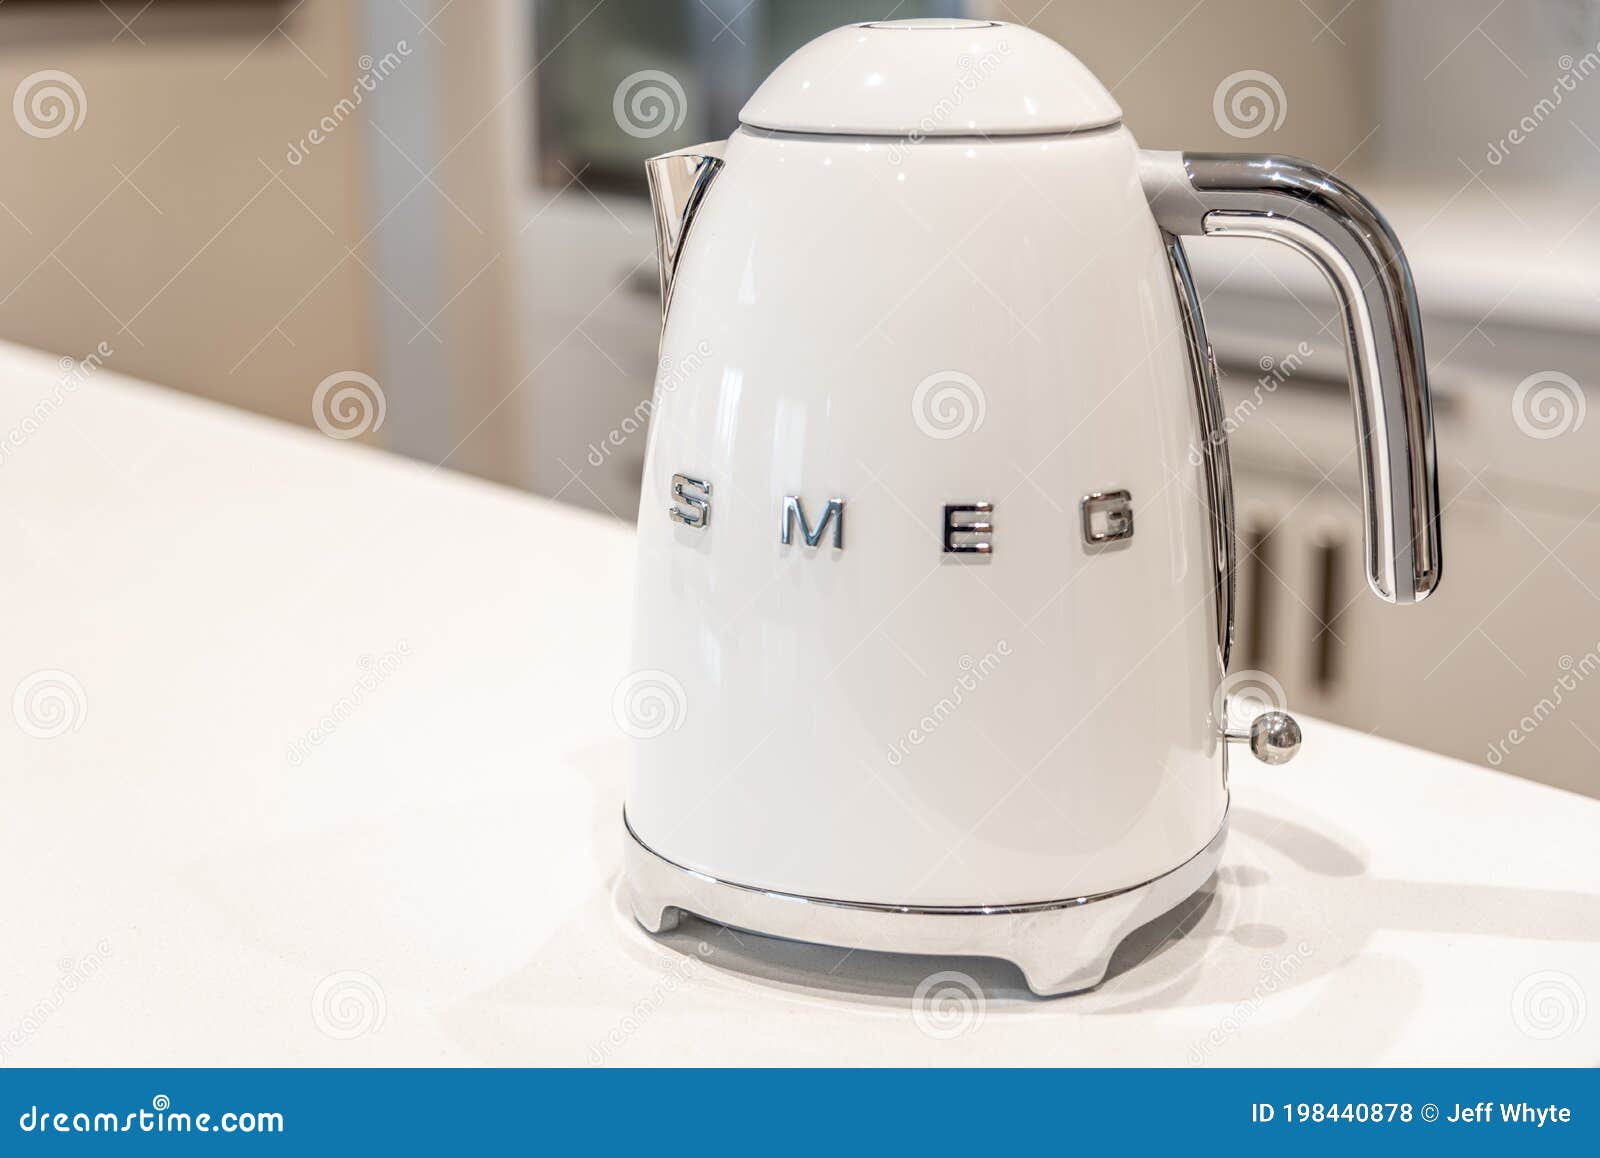 smeg white kettle